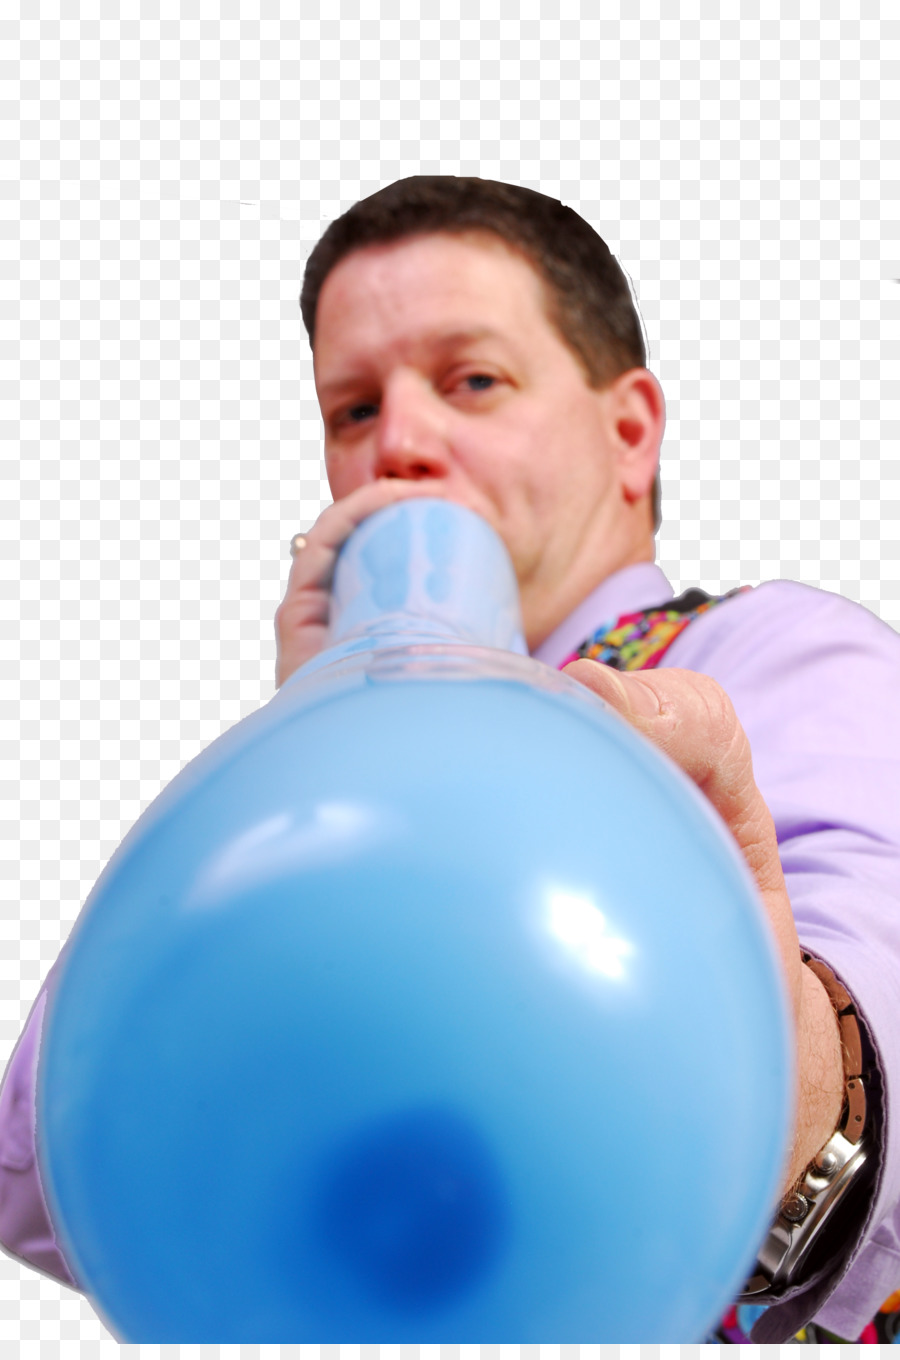 Ballon-Modellierung Gas-Ballon-Körper-inflation-Pumpe - blow up einen Ballon